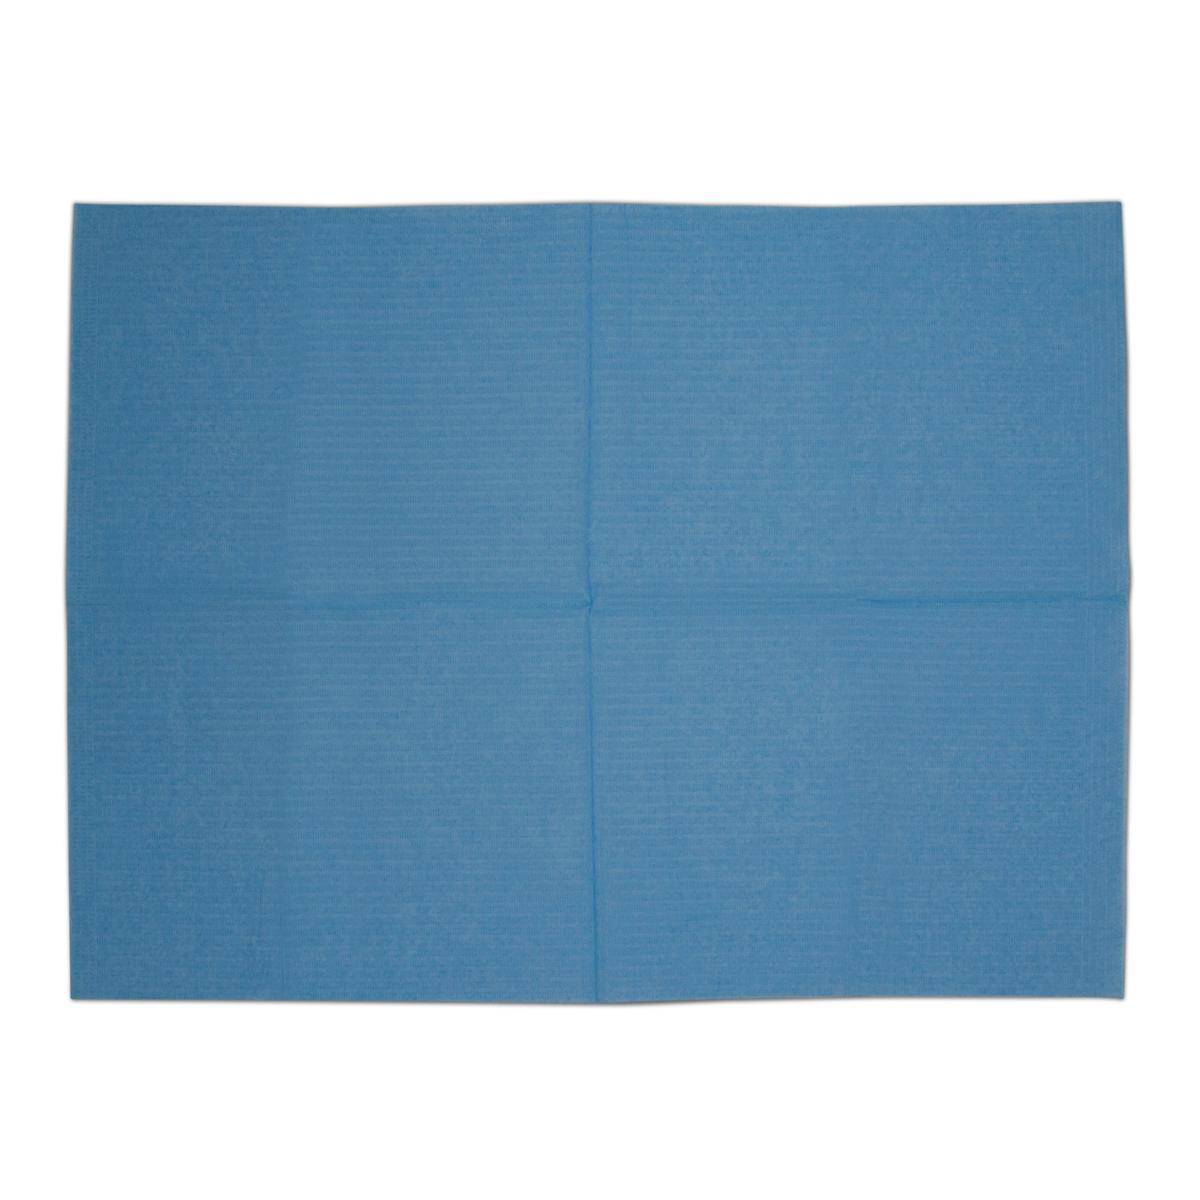 Dry Back patinten servetten - Donkerblauw, 100 stuks